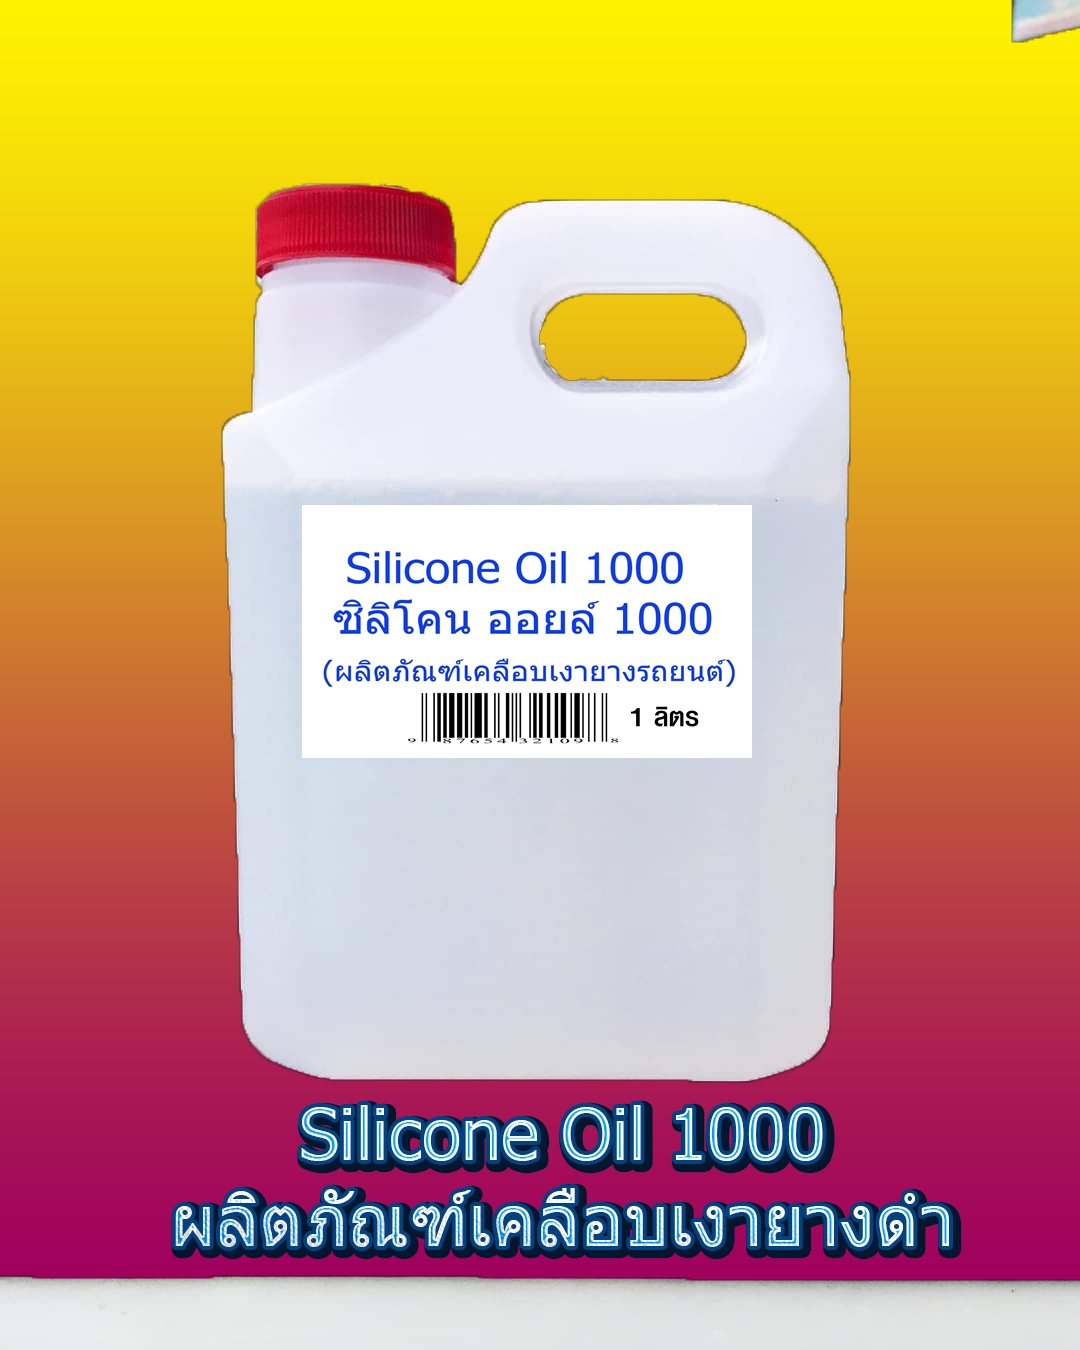 ซิลิโคน ออยล์ 1000 / Silicone Oil 1000 ขนาด 1 กก.